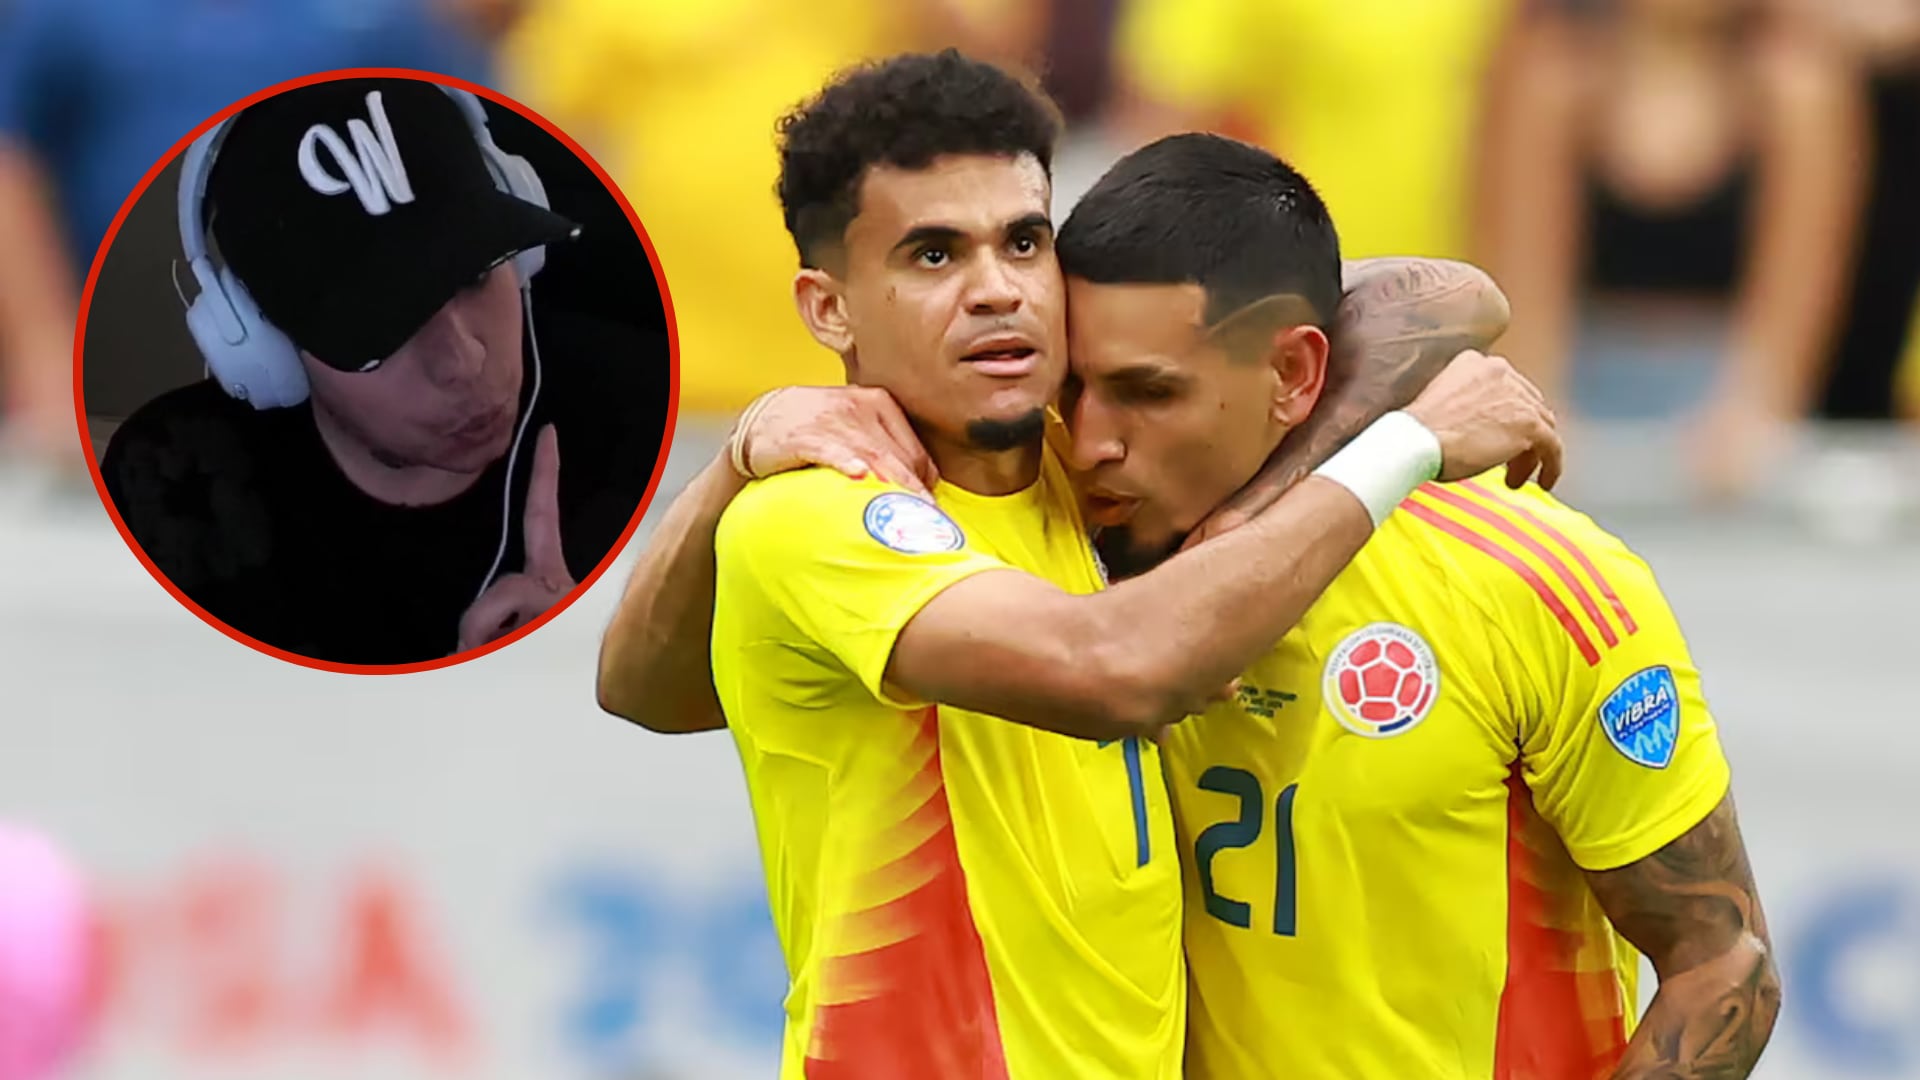 WestCol revelaría secreto de jugador de la Selección Colombia si no sigue sus instrucciones